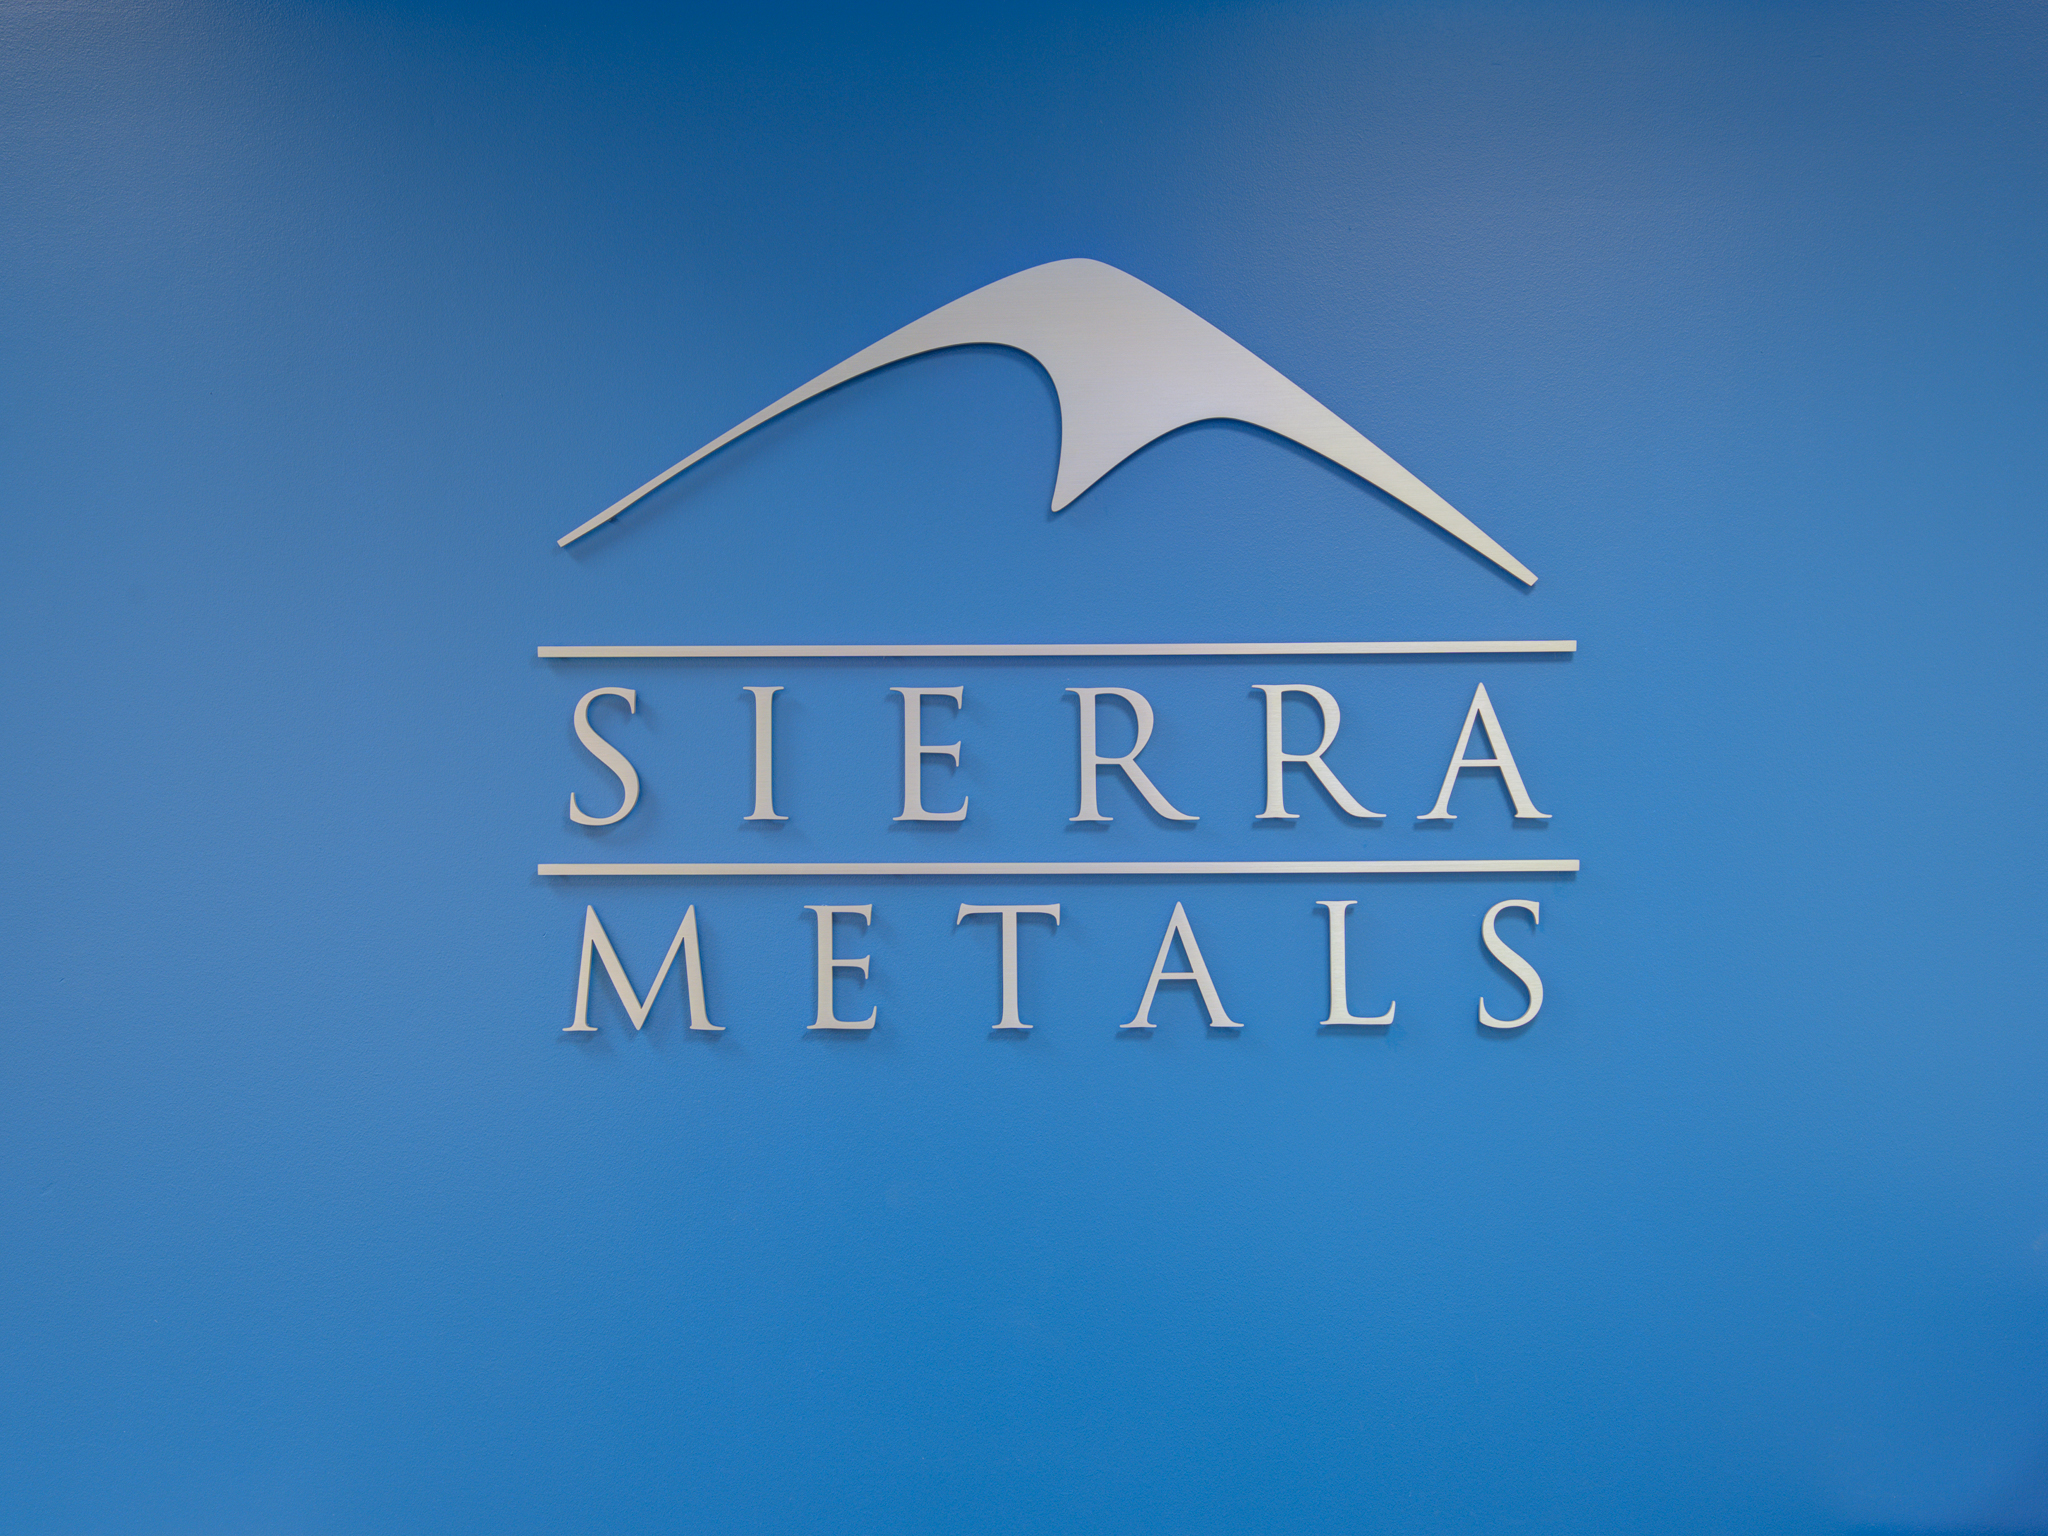 Sierra Metals